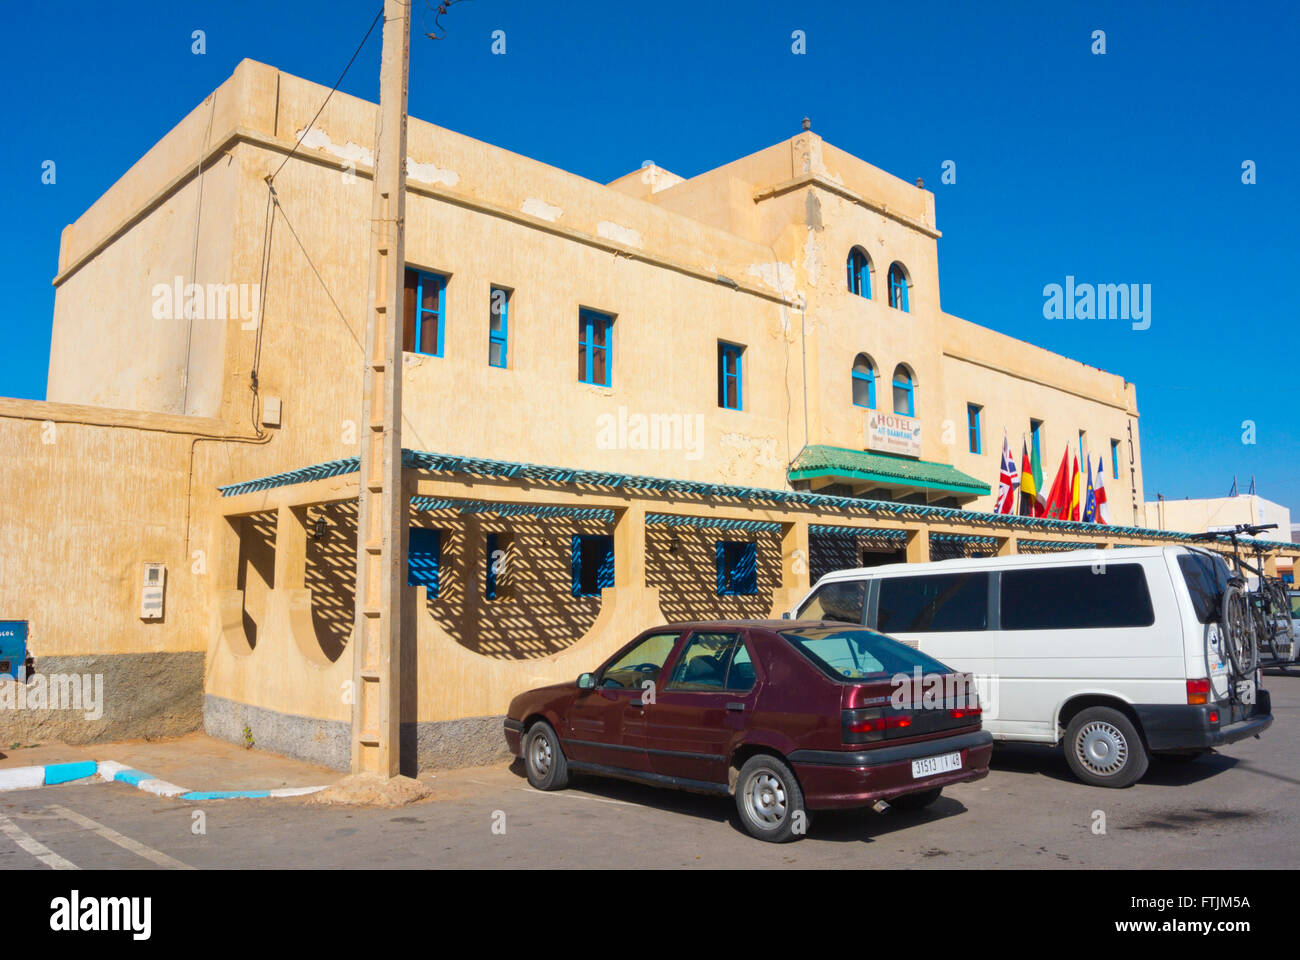 Hotel aci Baamrane, Sidi Ifni, Guelmim-Oued, région du sud du Maroc, l'Afrique du Nord Banque D'Images